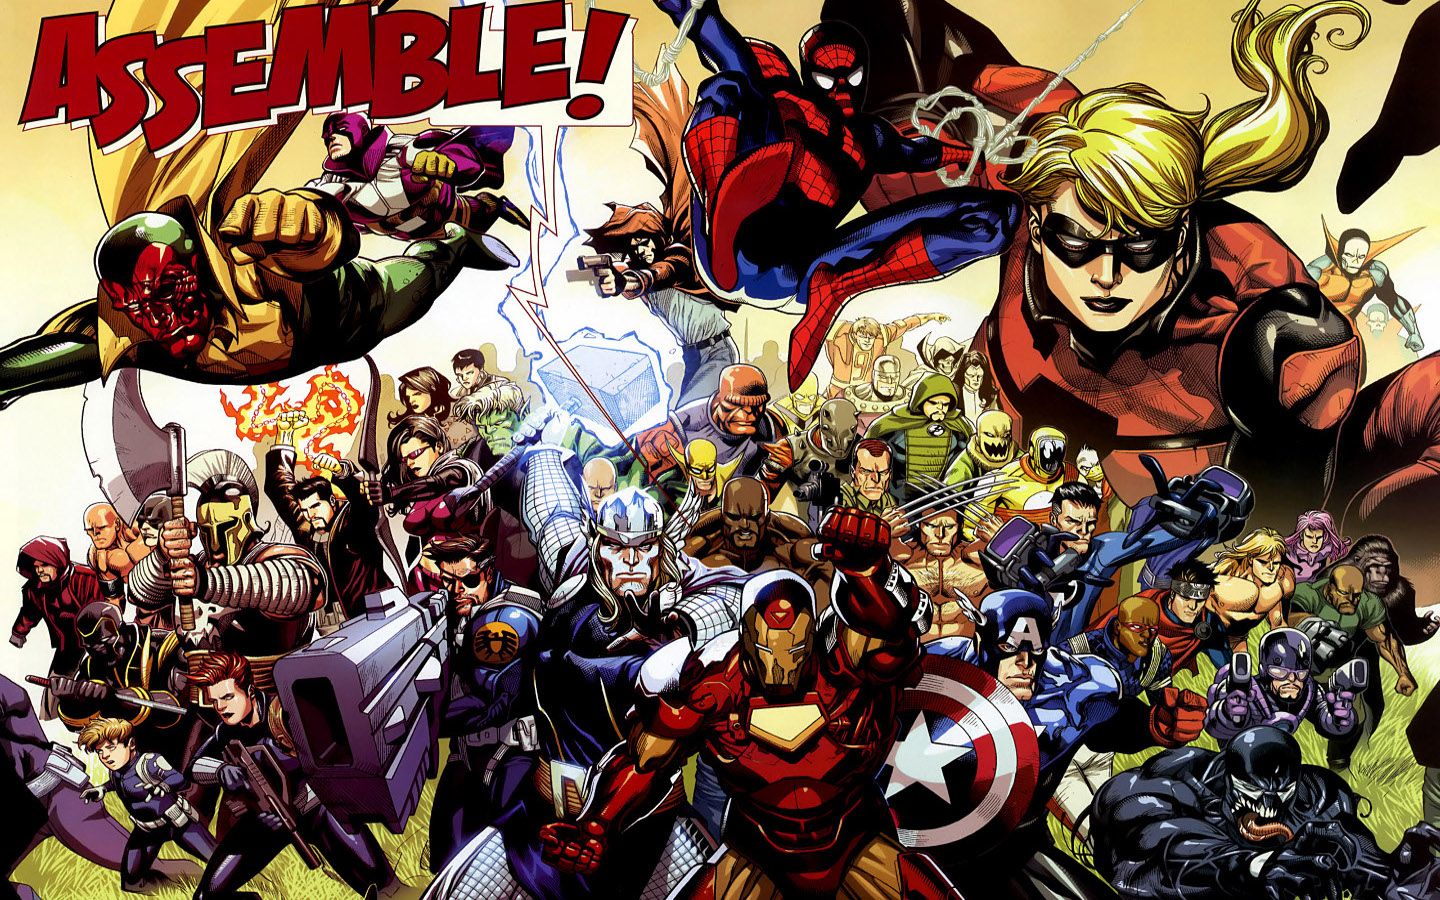 Cartoons Avengers comics Marvel Comics wallpaper | 1440x900 ...